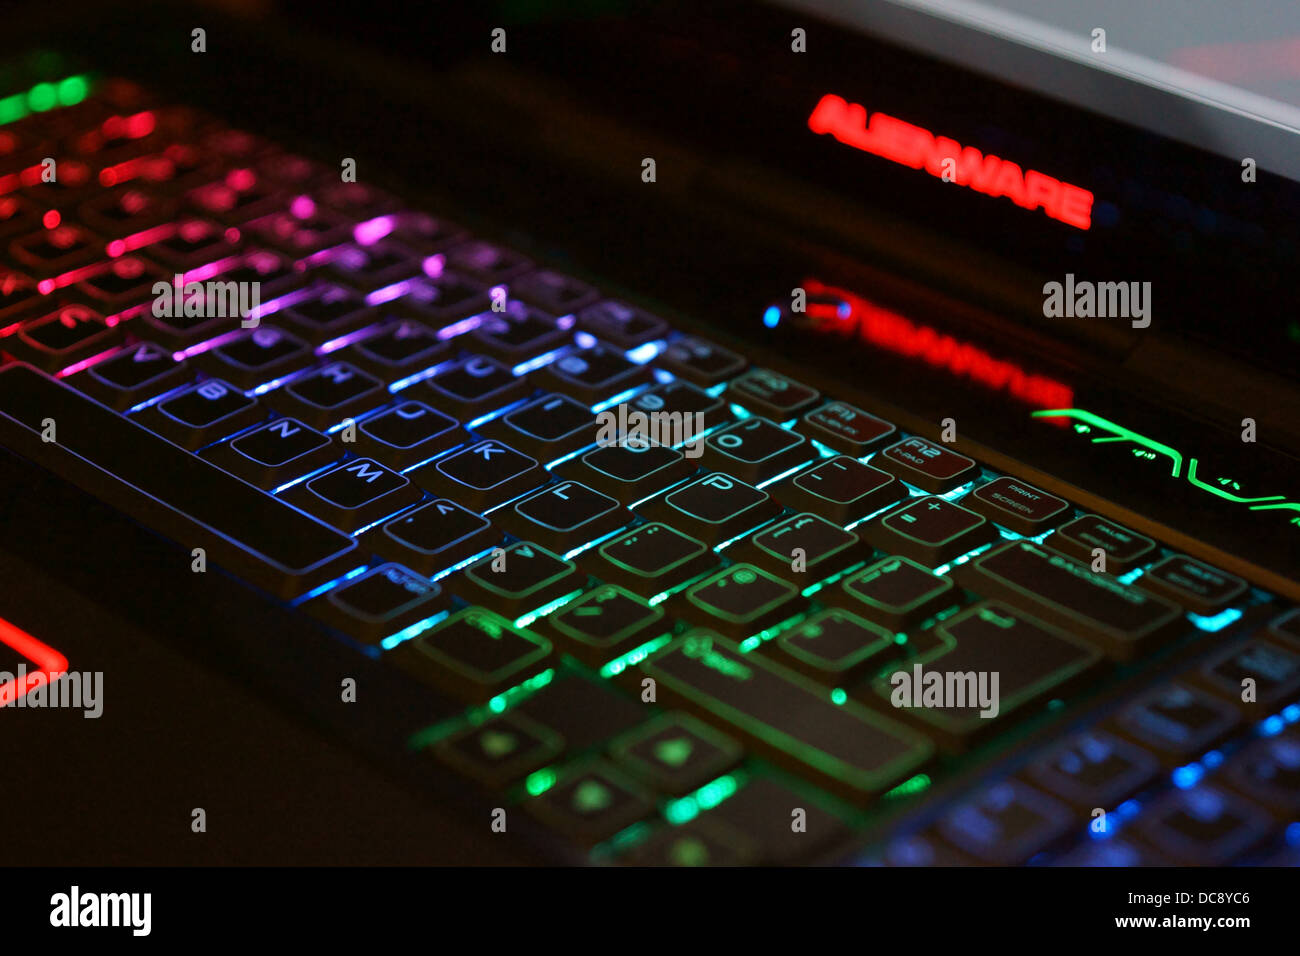 dell alienware laptop keyboard lights up green purple blue glowing Stock - Alamy